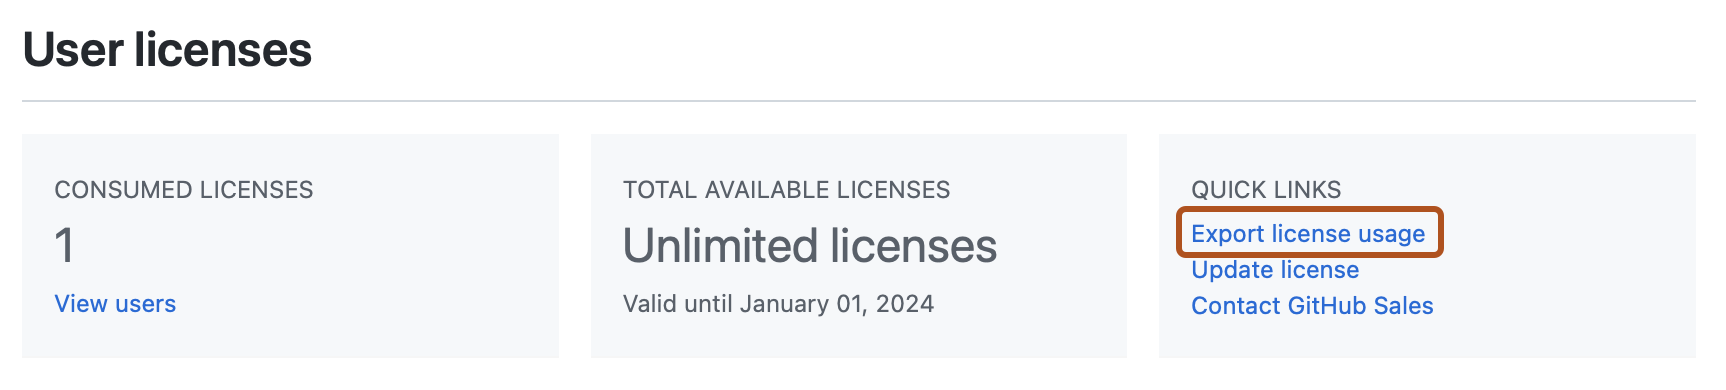 Снимок экрана: раздел "Пользовательские лицензии" на странице "Лицензия". Ссылка с меткой "Использование лицензий на экспорт" выделена темно-оранжевым цветом.